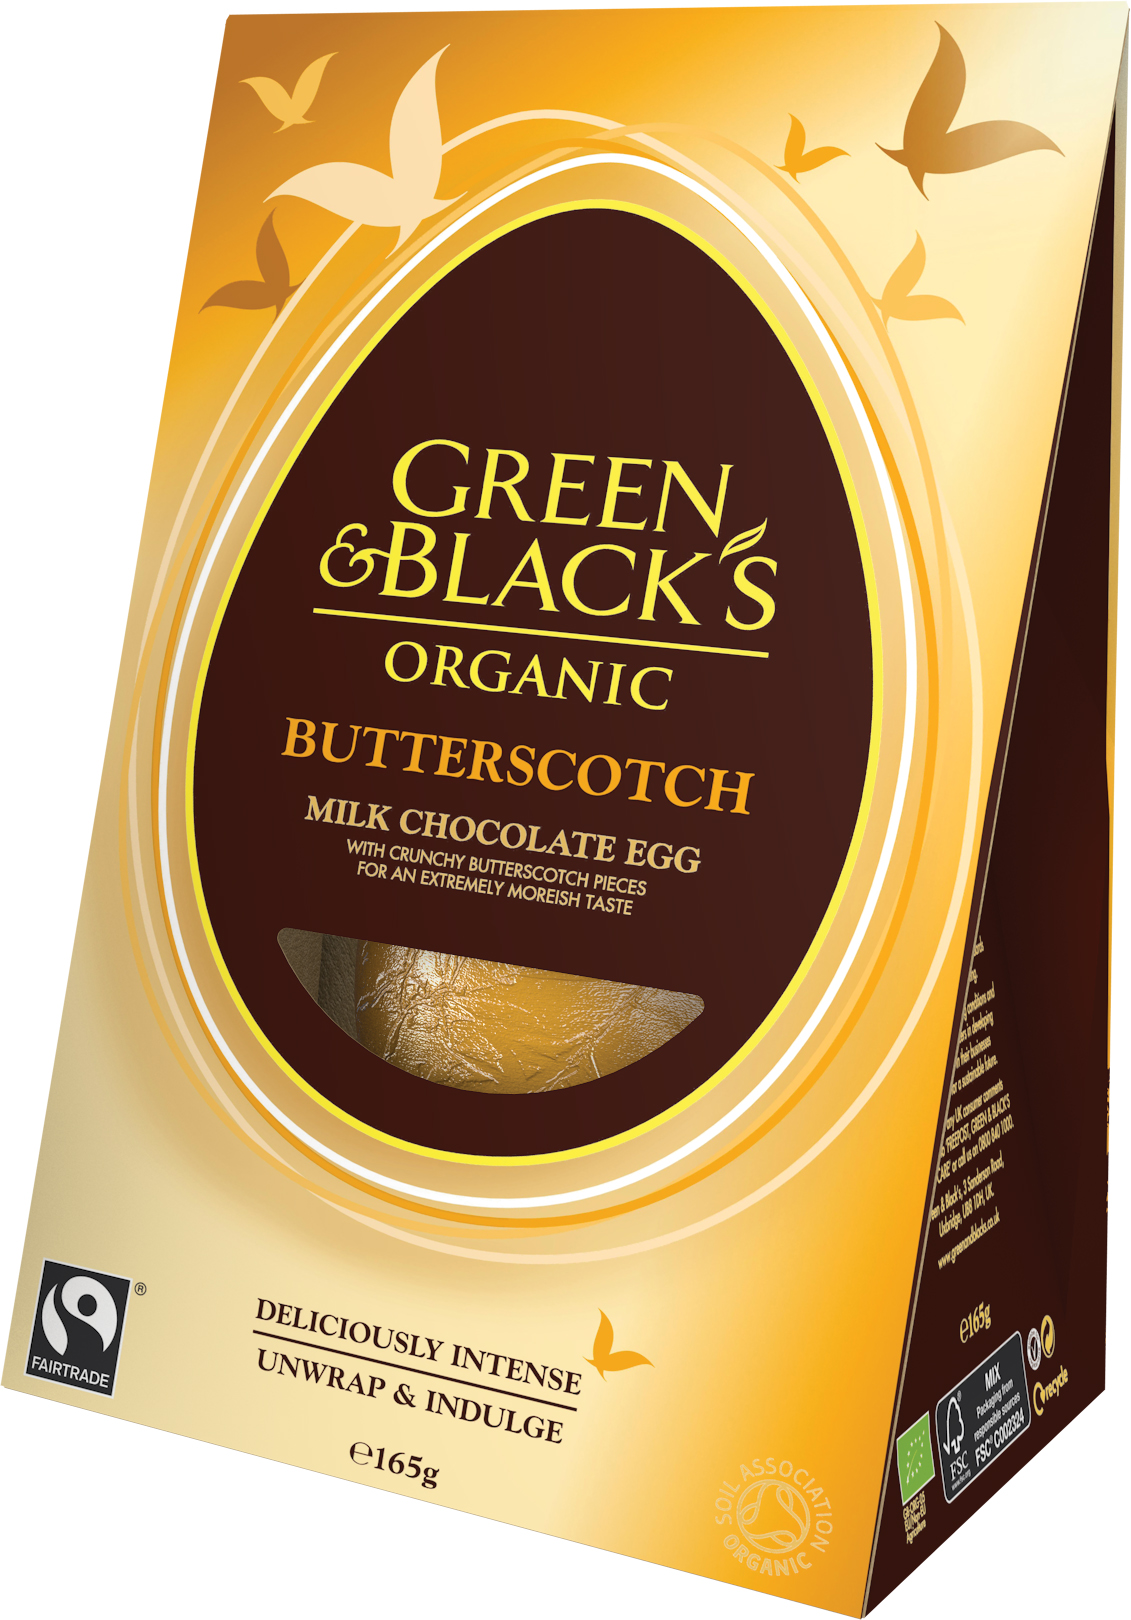 Green & Black’s Butterscotch Egg